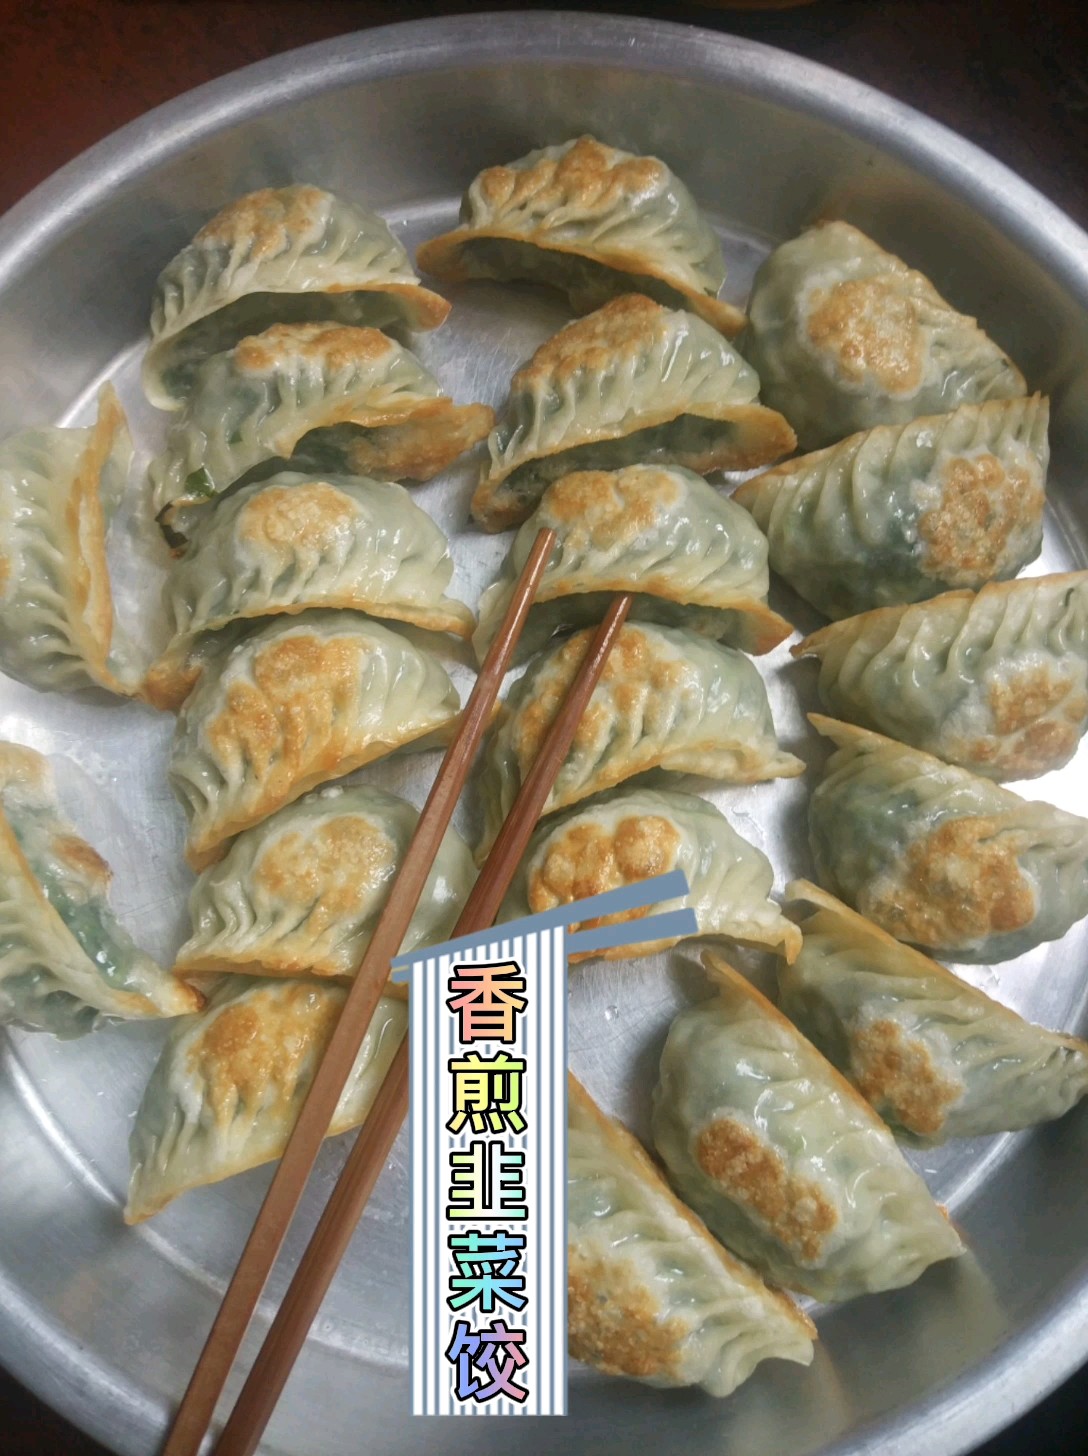 Pan-fried Leek Dumplings recipe